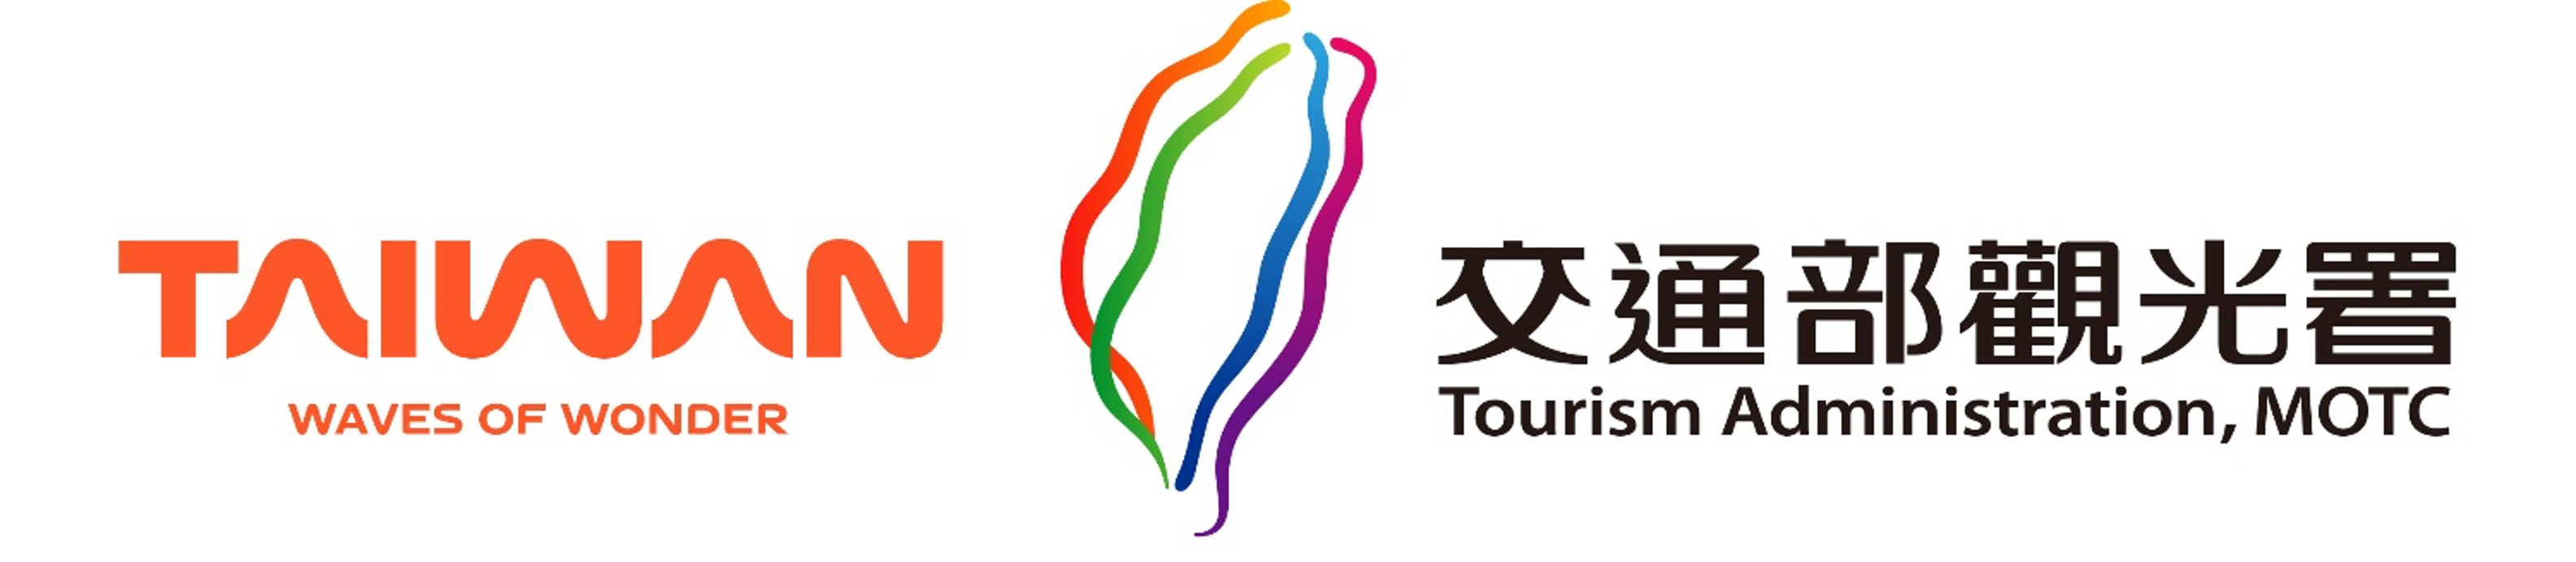 台湾の観光イメージ向上を目指し「台湾観光ブランド3.0」始動
　ブランドアイデンティティを刷新